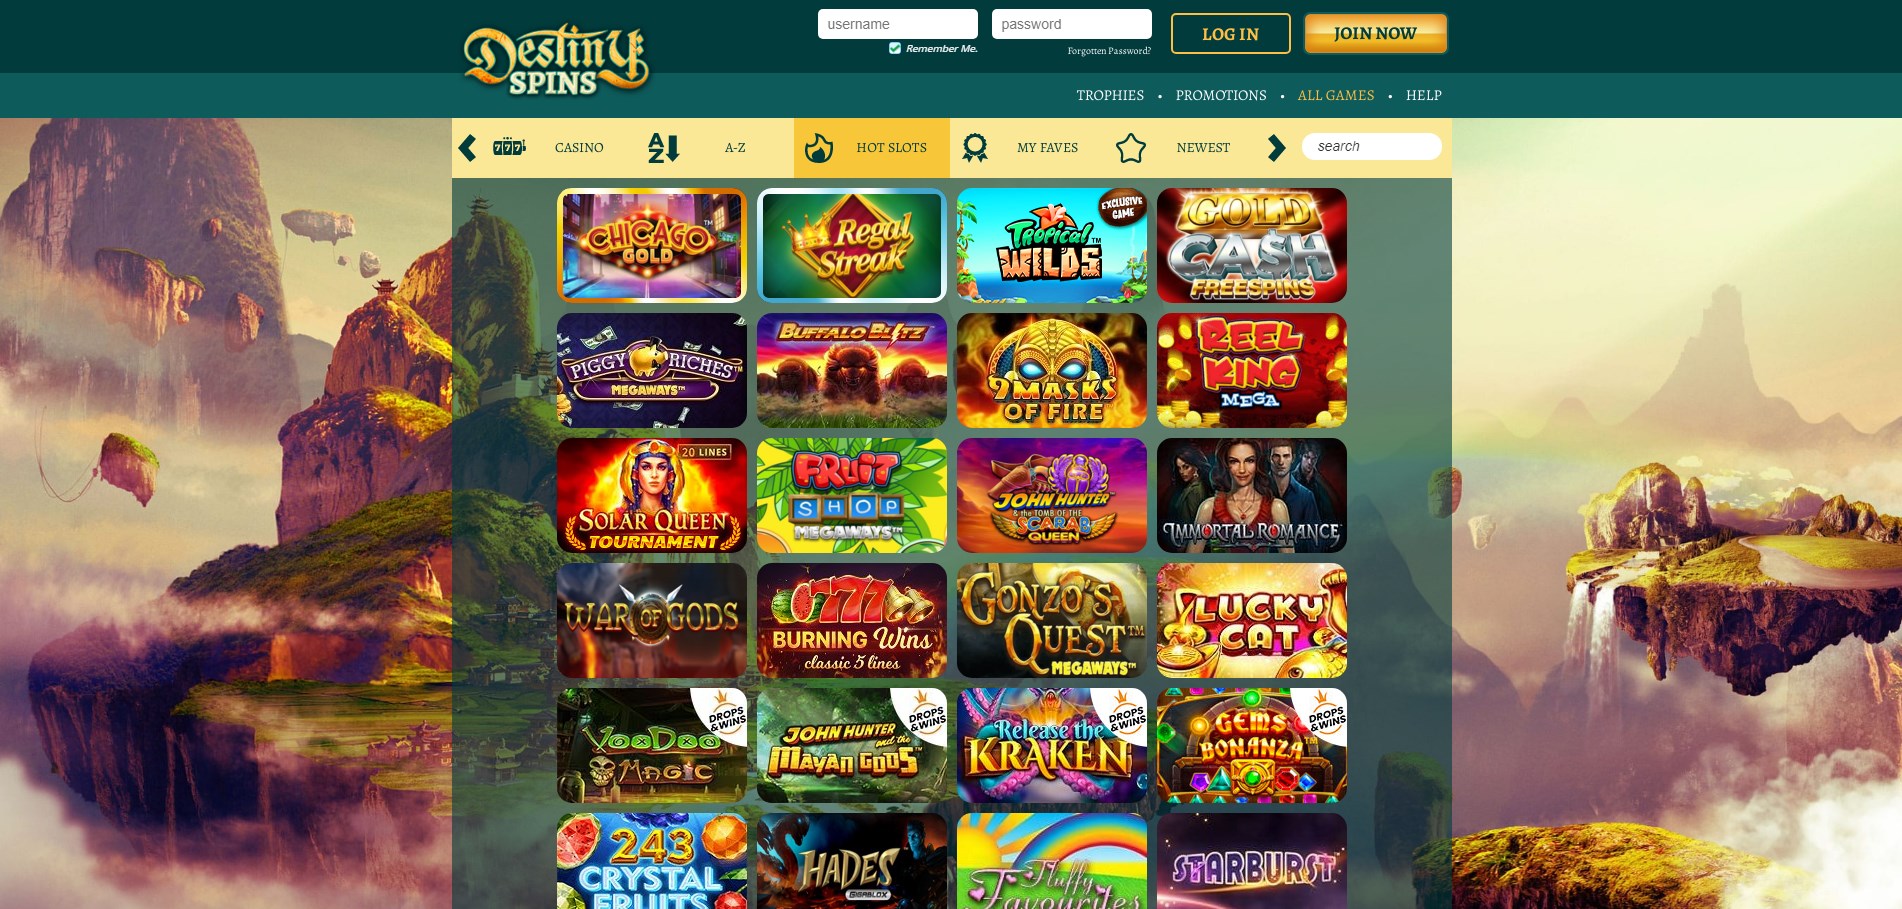 Destiny Spins Casino Games